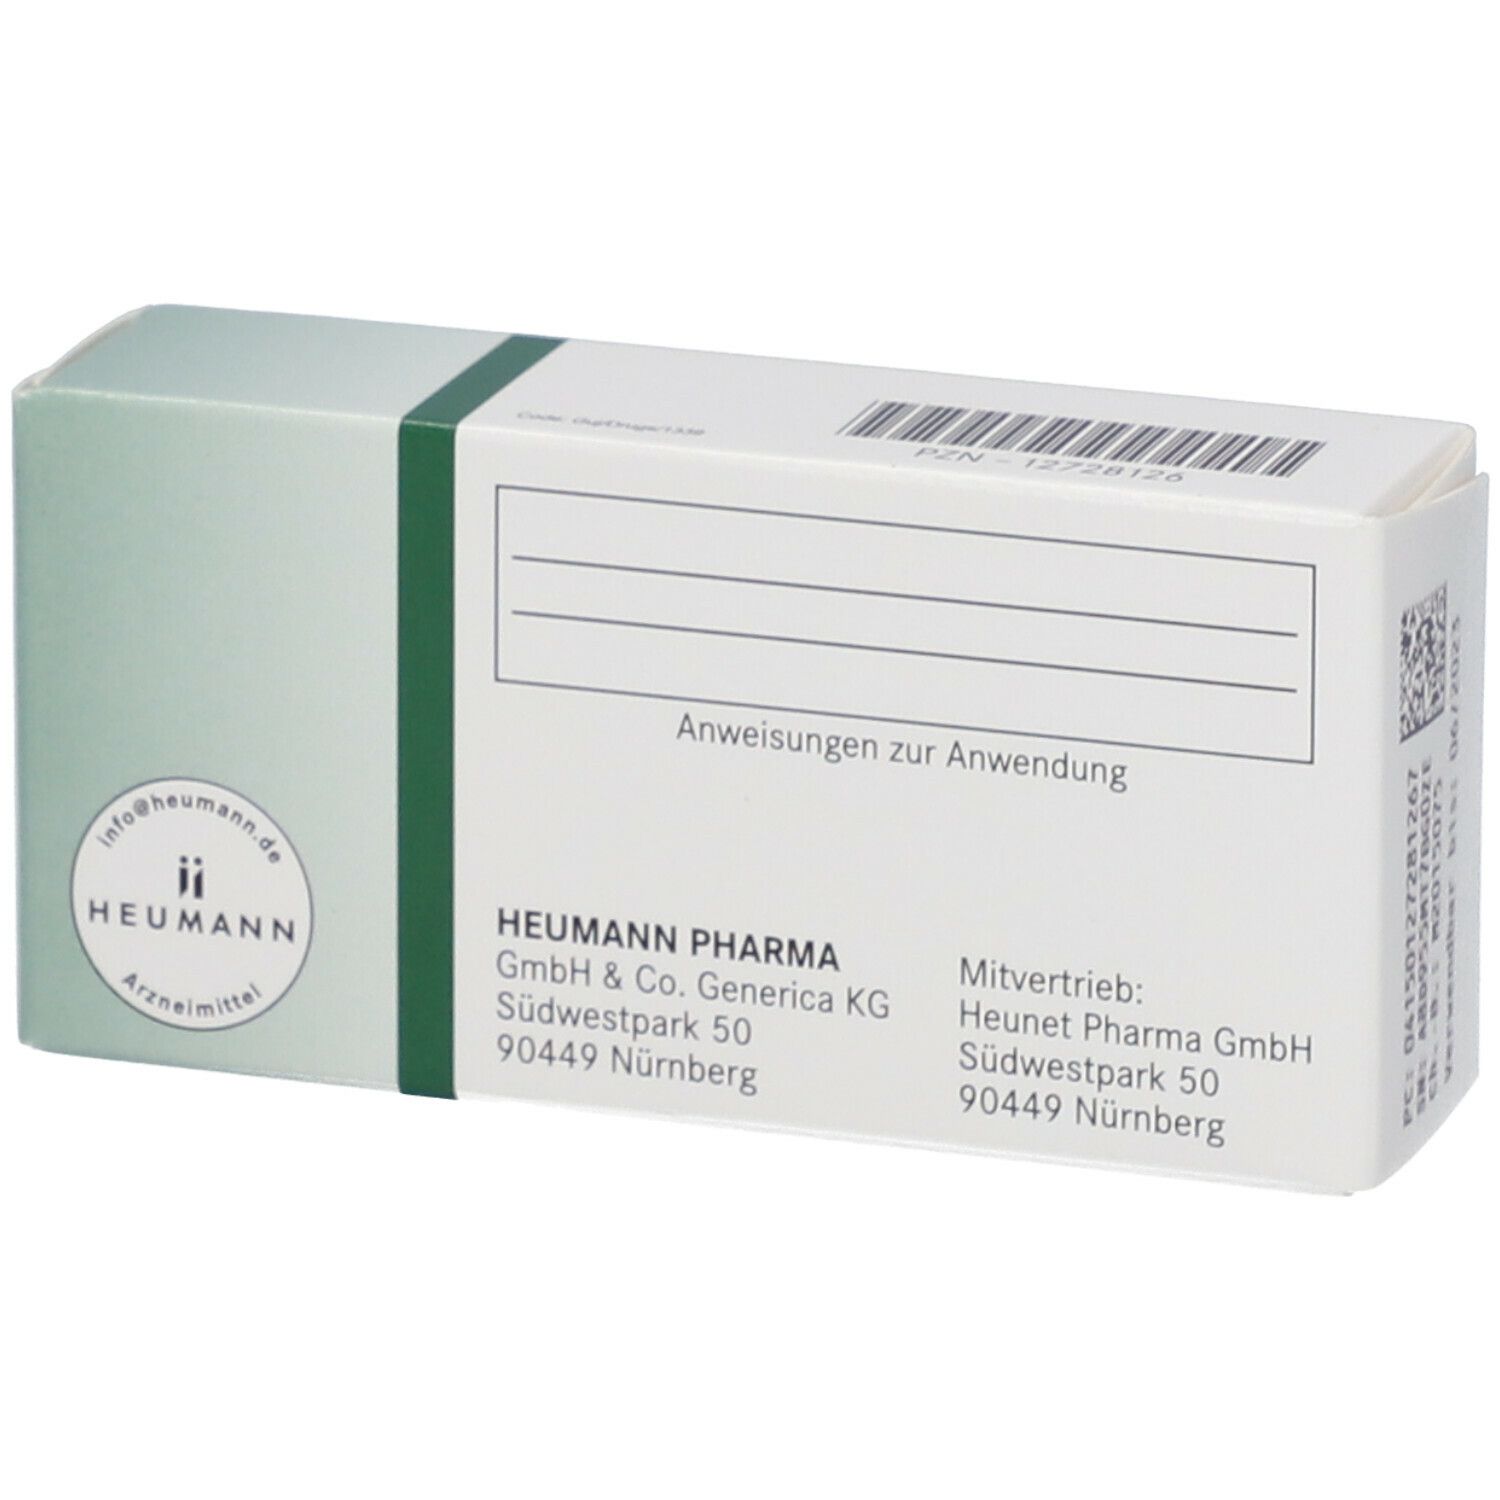 Tadalafil Heumann 20 mg